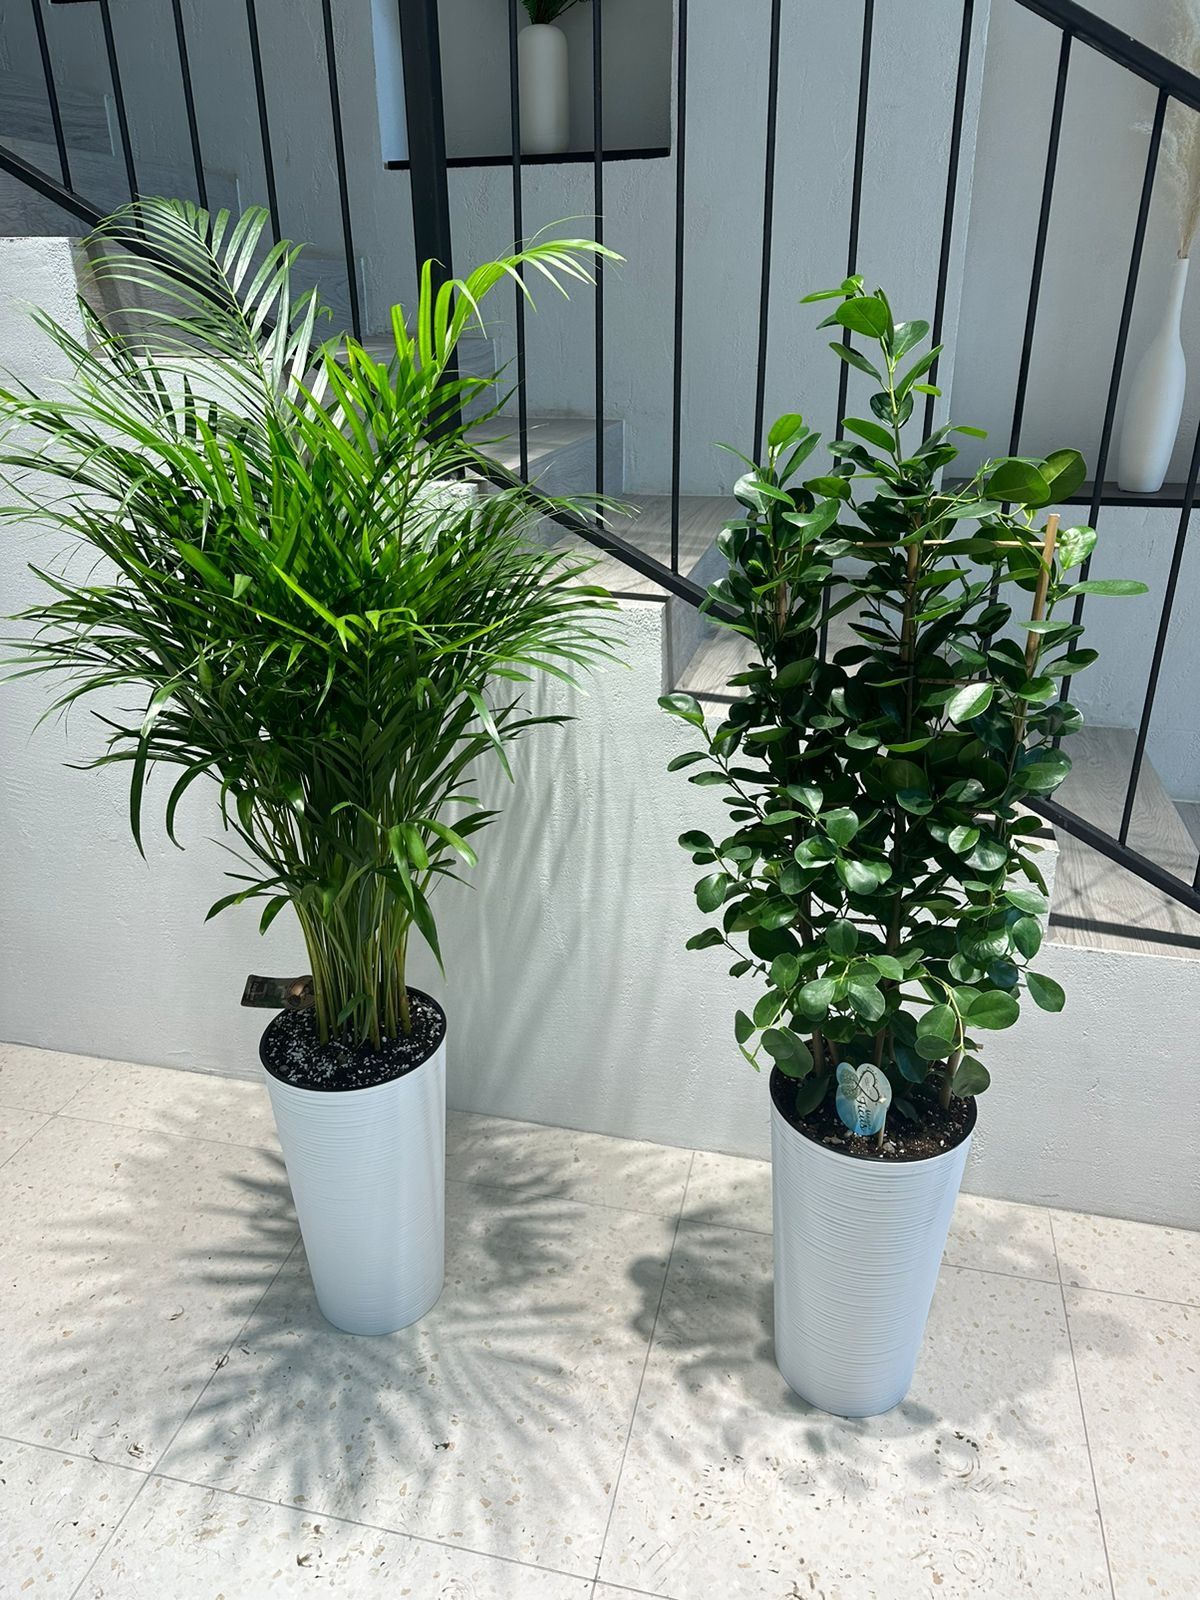 Растения для офисов и квартир пальма Дипсис